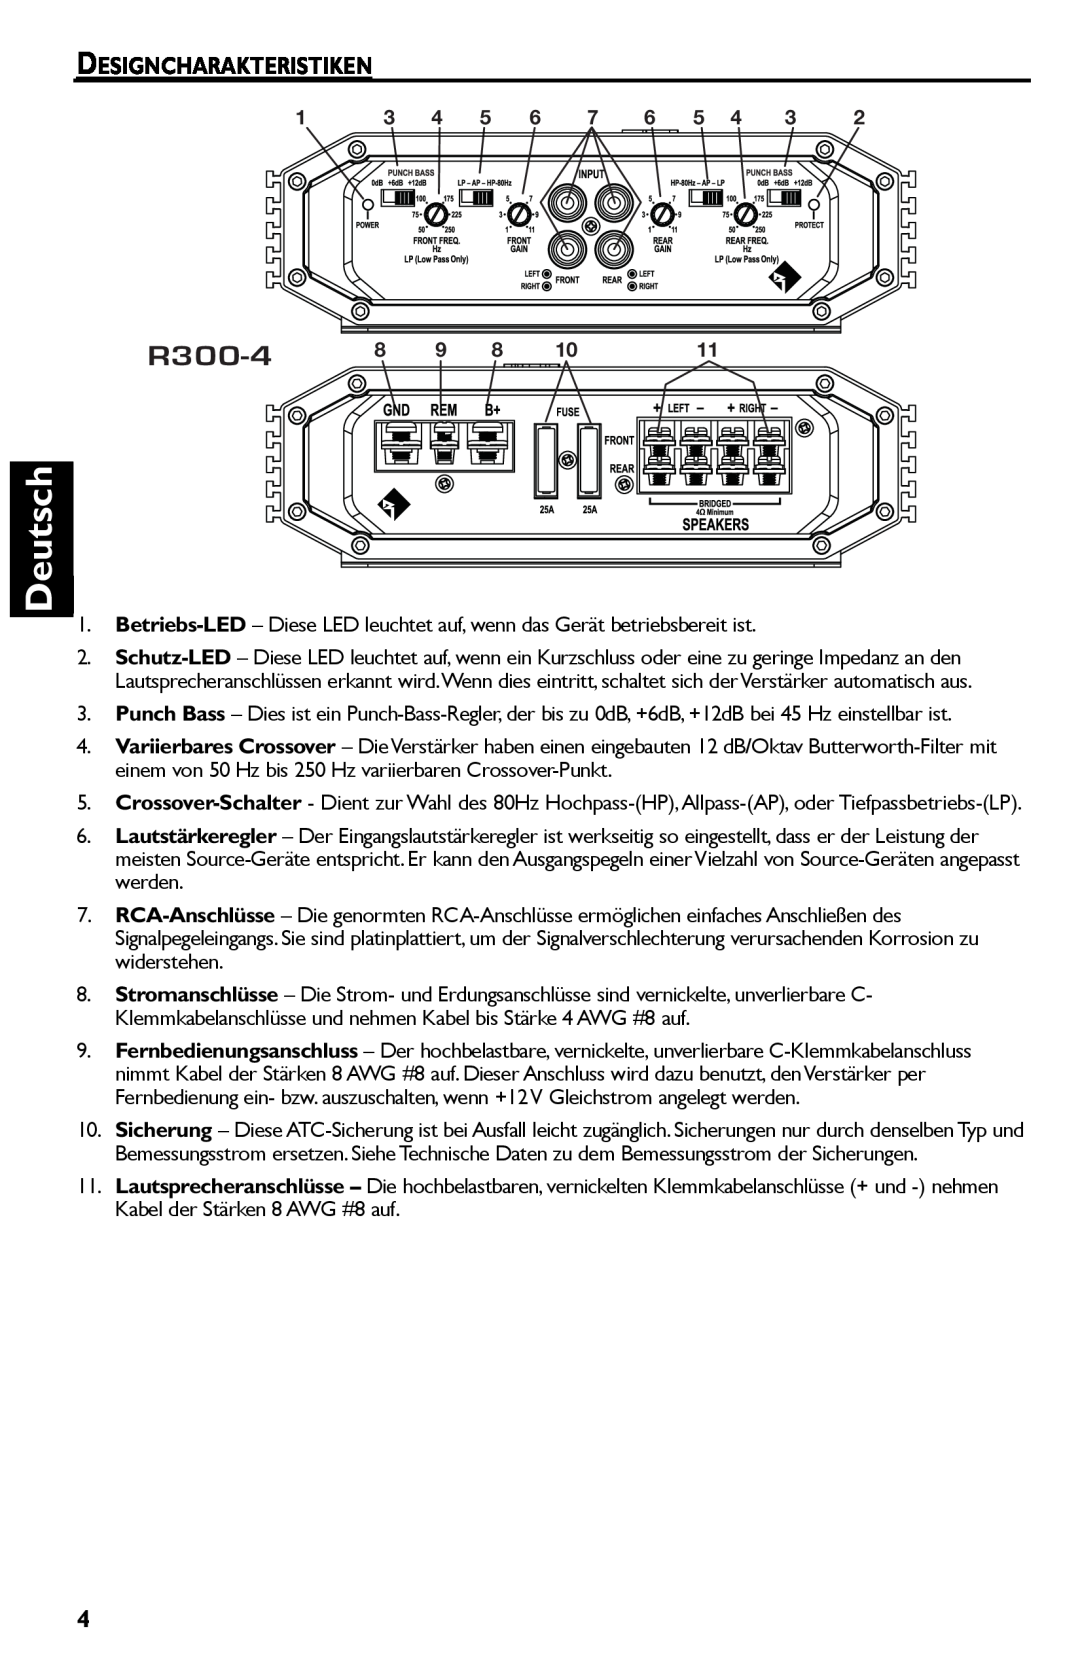 Rockford Fosgate R300-4 manual Deutsch, Designcharakteristiken 